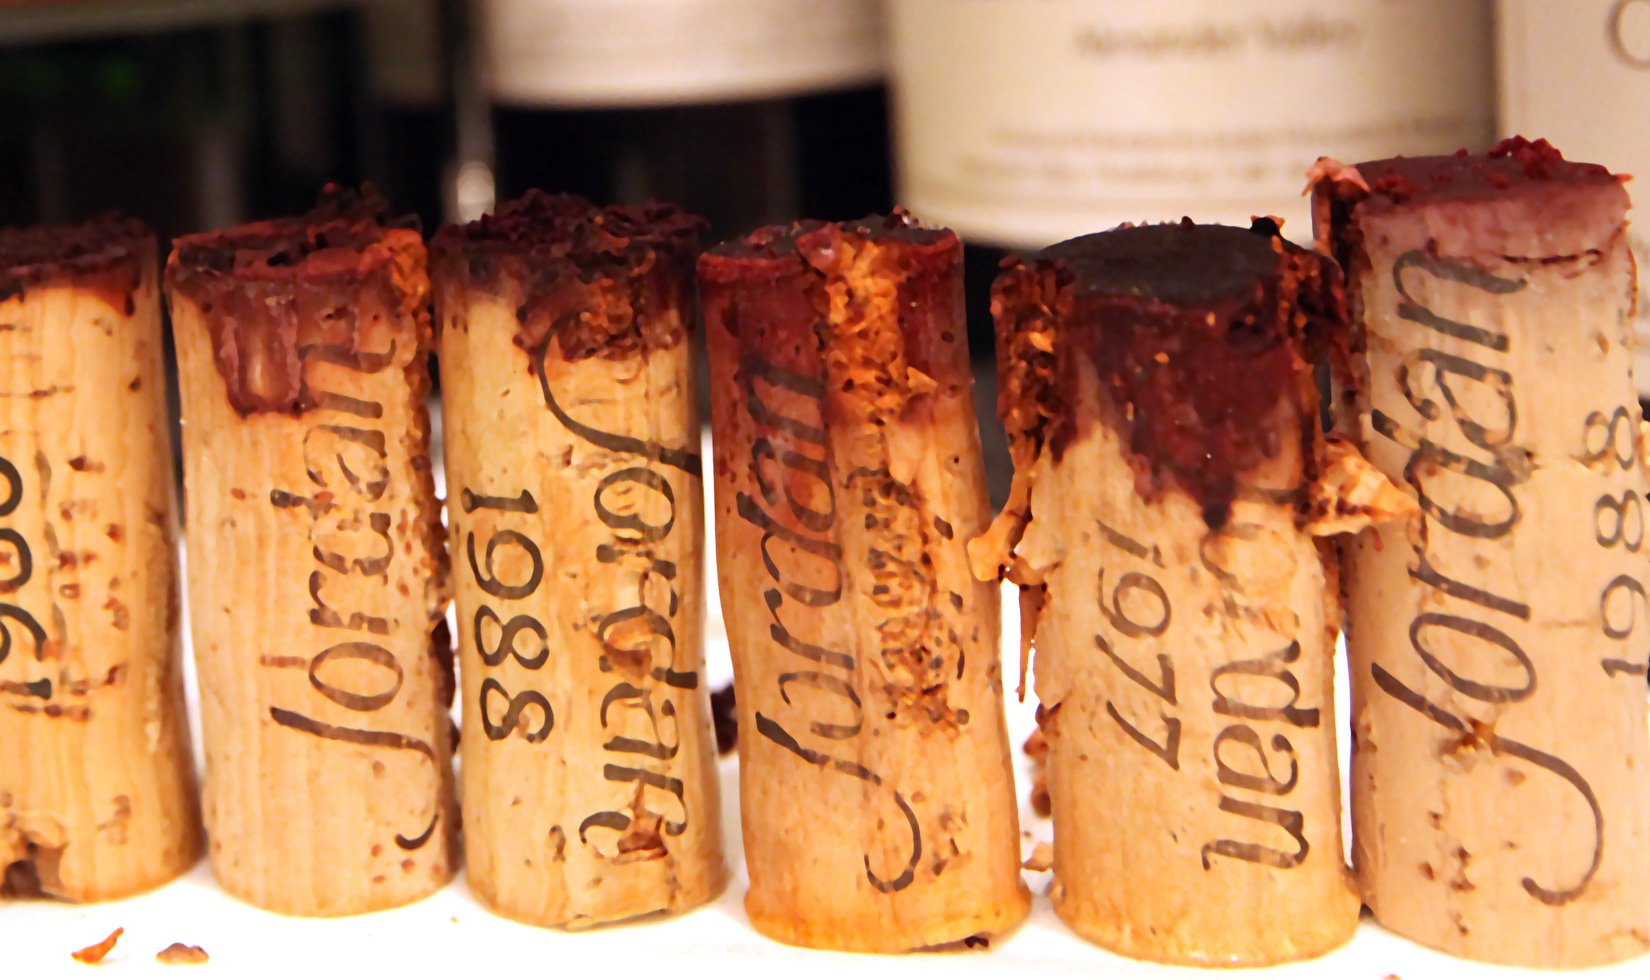 Jordan wine corks, old wine corks